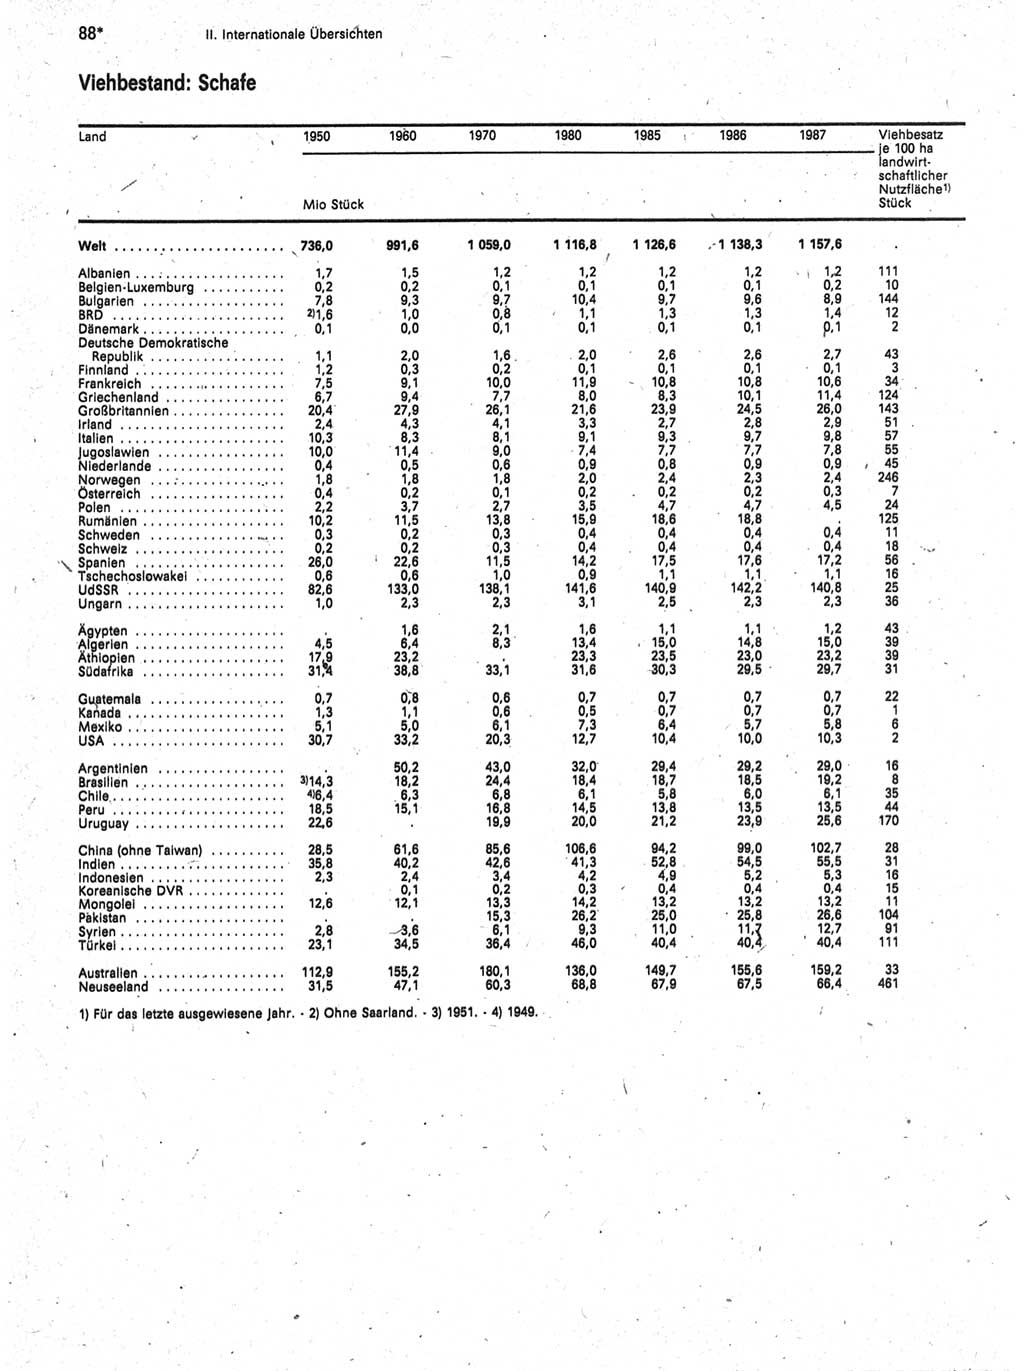 Statistisches Jahrbuch der Deutschen Demokratischen Republik (DDR) 1989, Seite 88 (Stat. Jb. DDR 1989, S. 88)